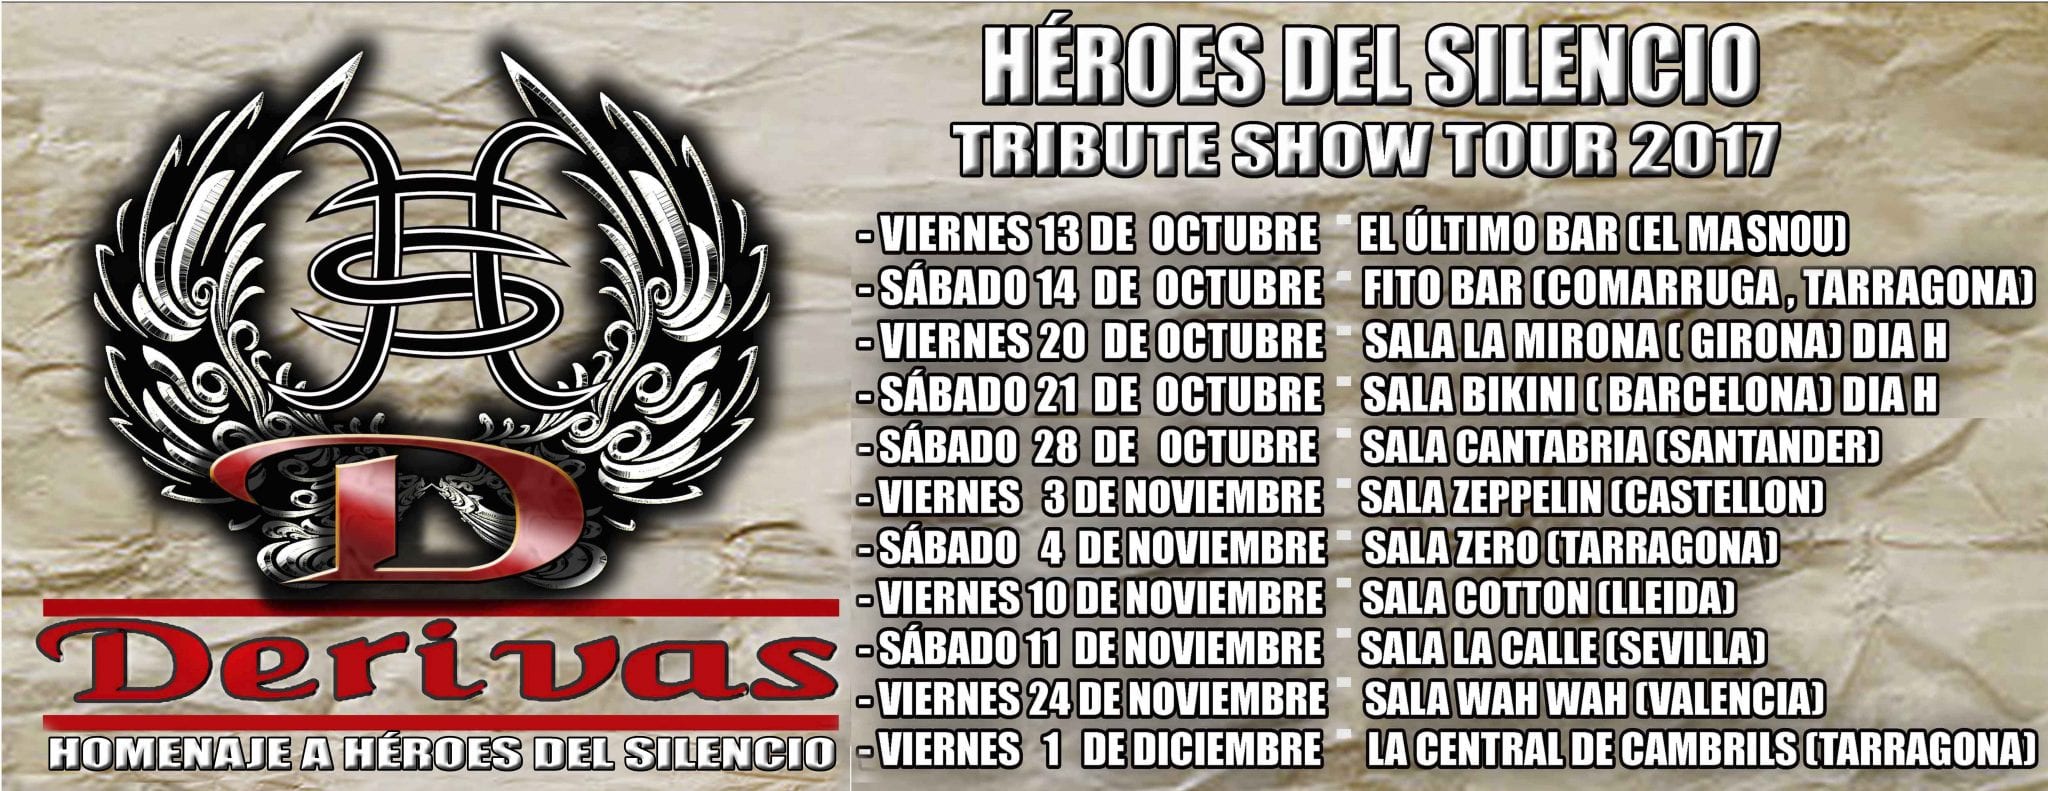 El próximo 20 de octubre dará inicio la segunda parte de la gira 2017 de DERIVAS, tributo a Héroes del Silencio